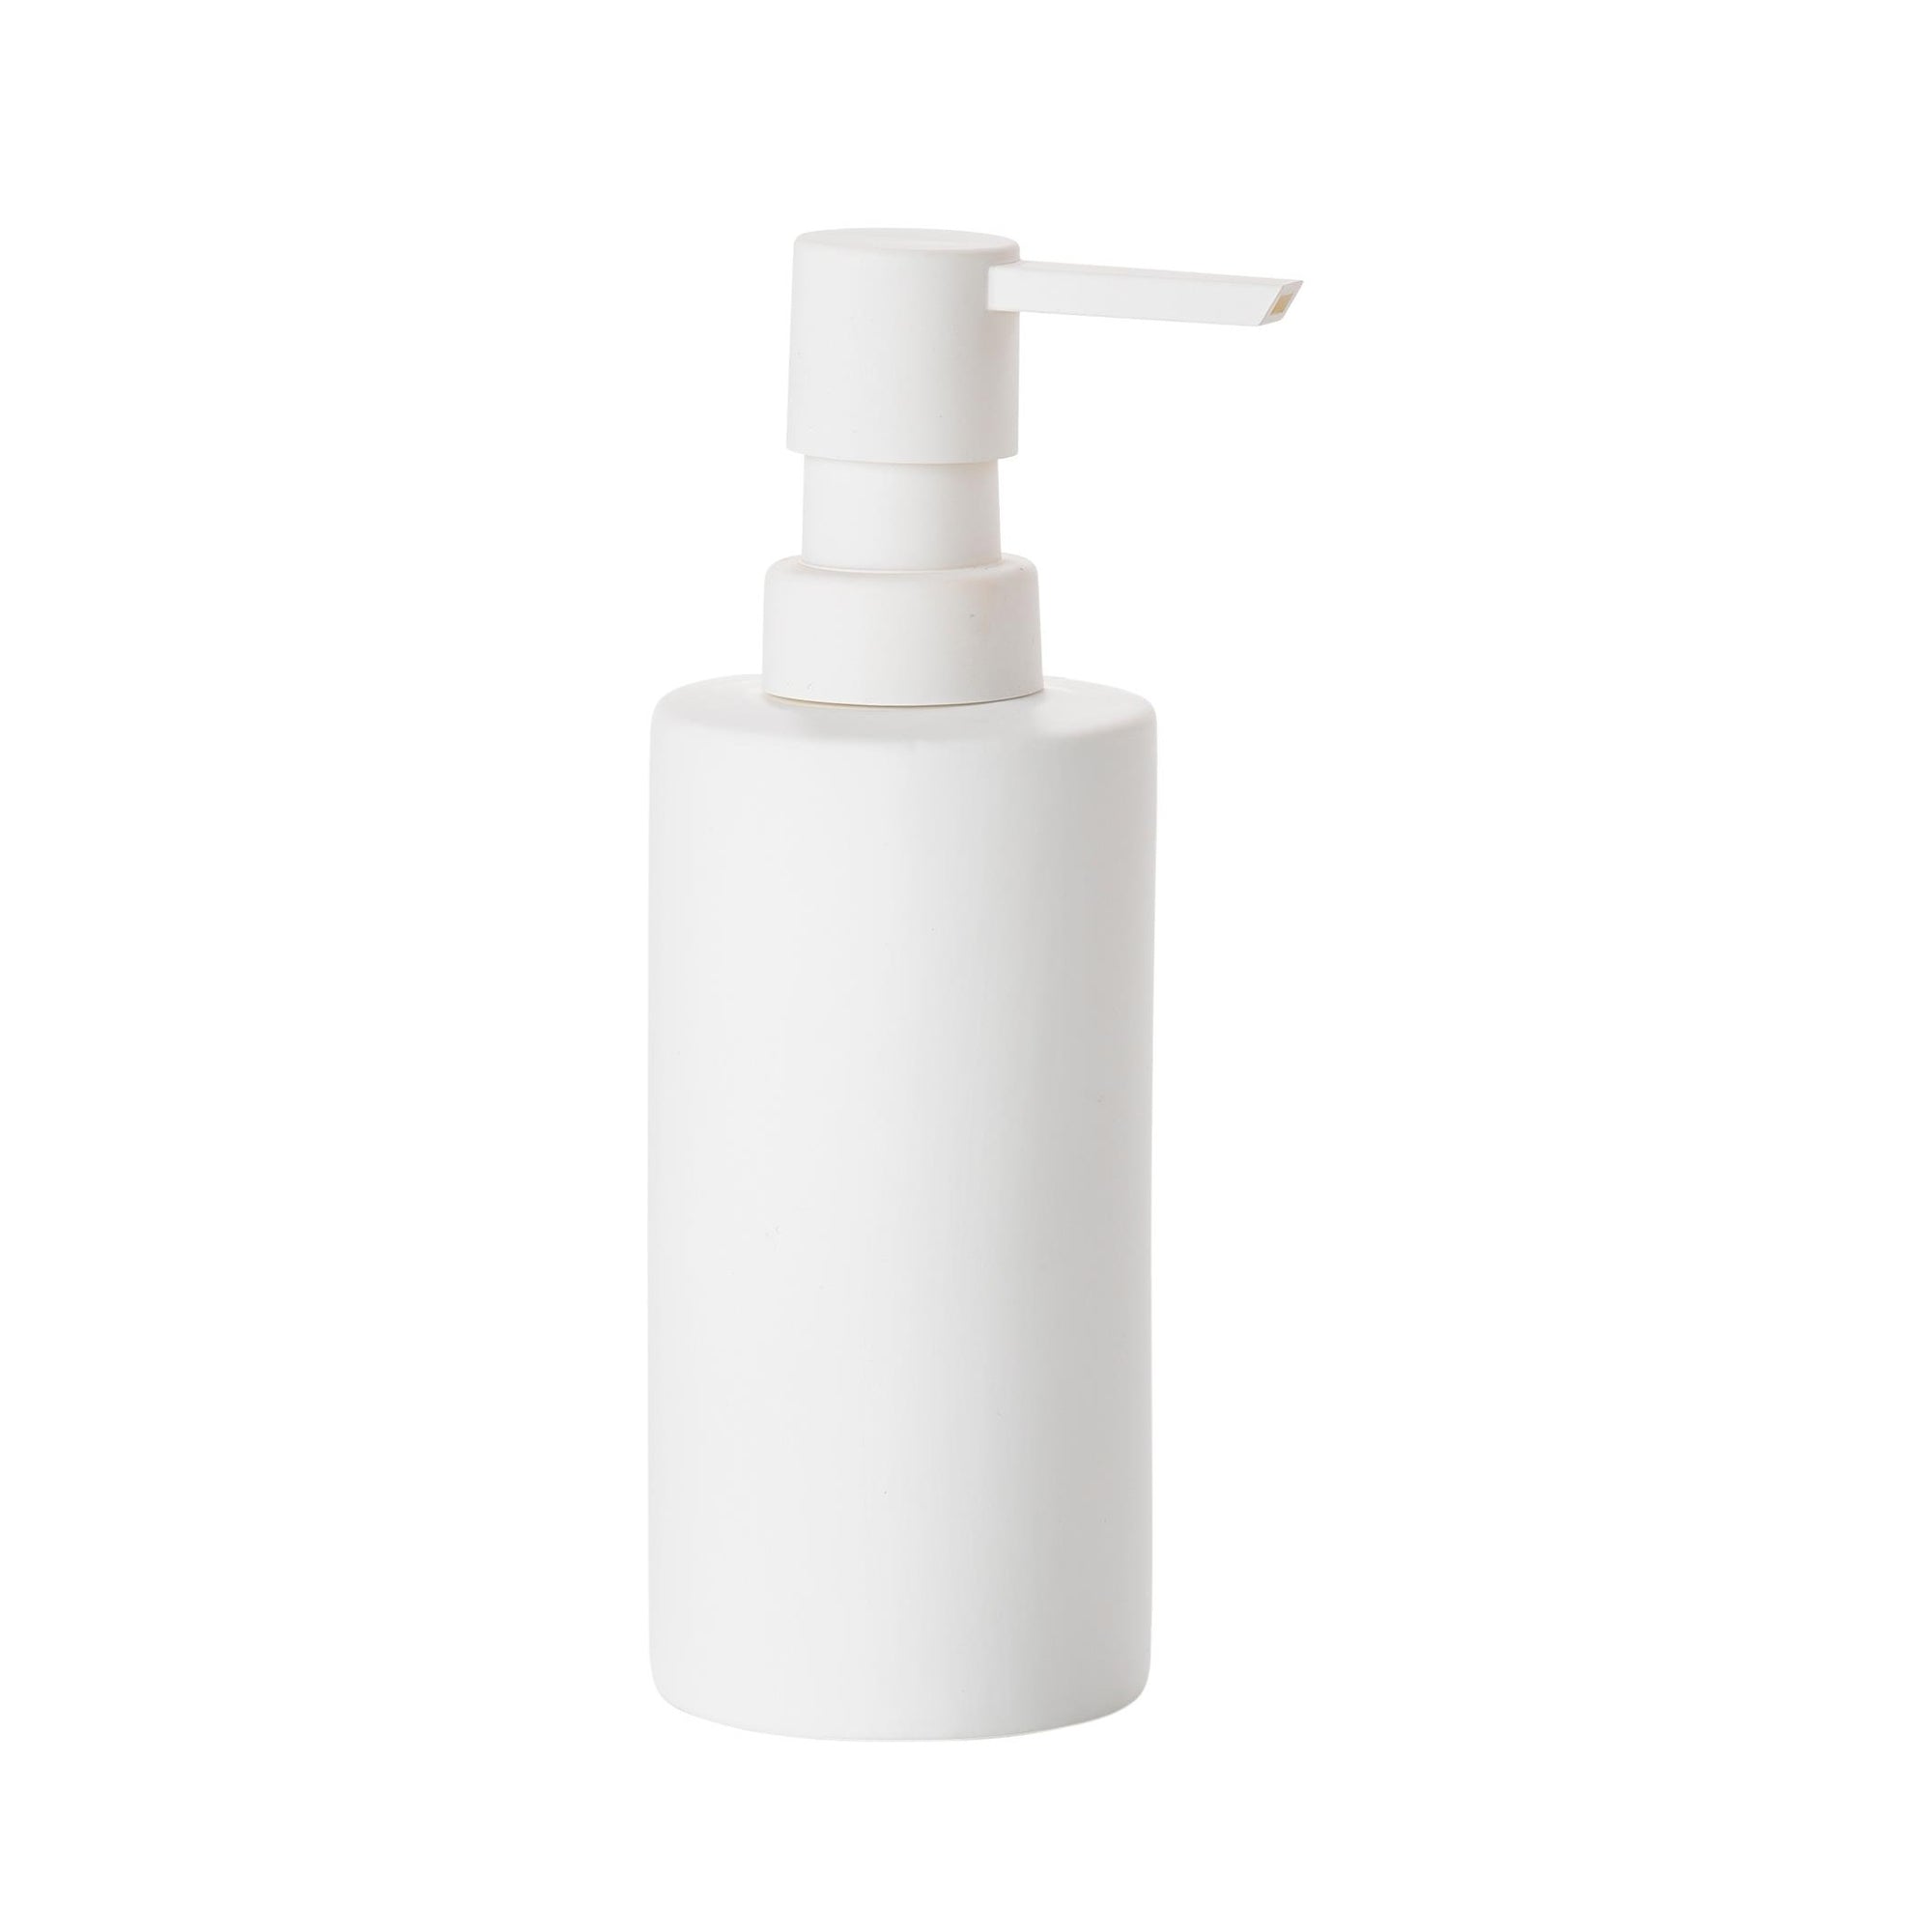 Solo Soap Dispenser- White